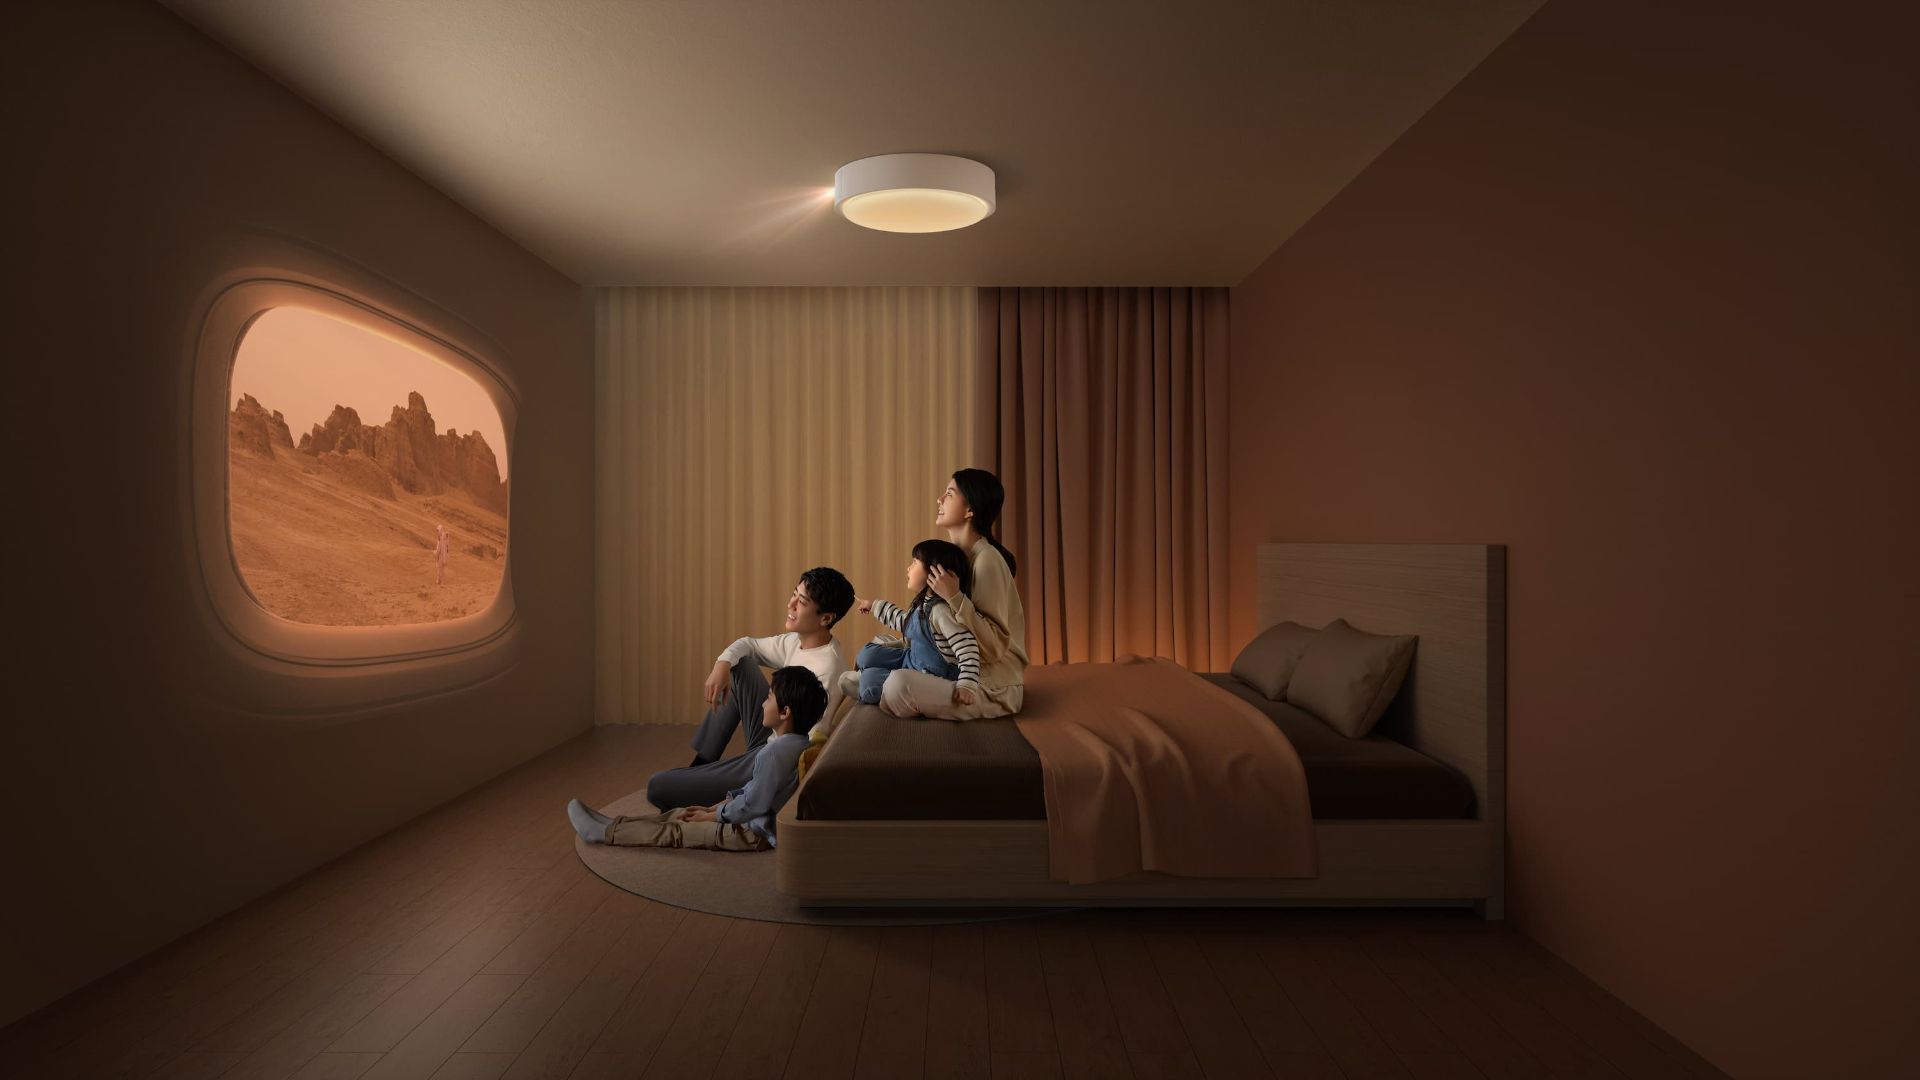 پروژکتور Xgimi مدل Aladdin درحال پخش روی دیوار برای خانواده آسیایی